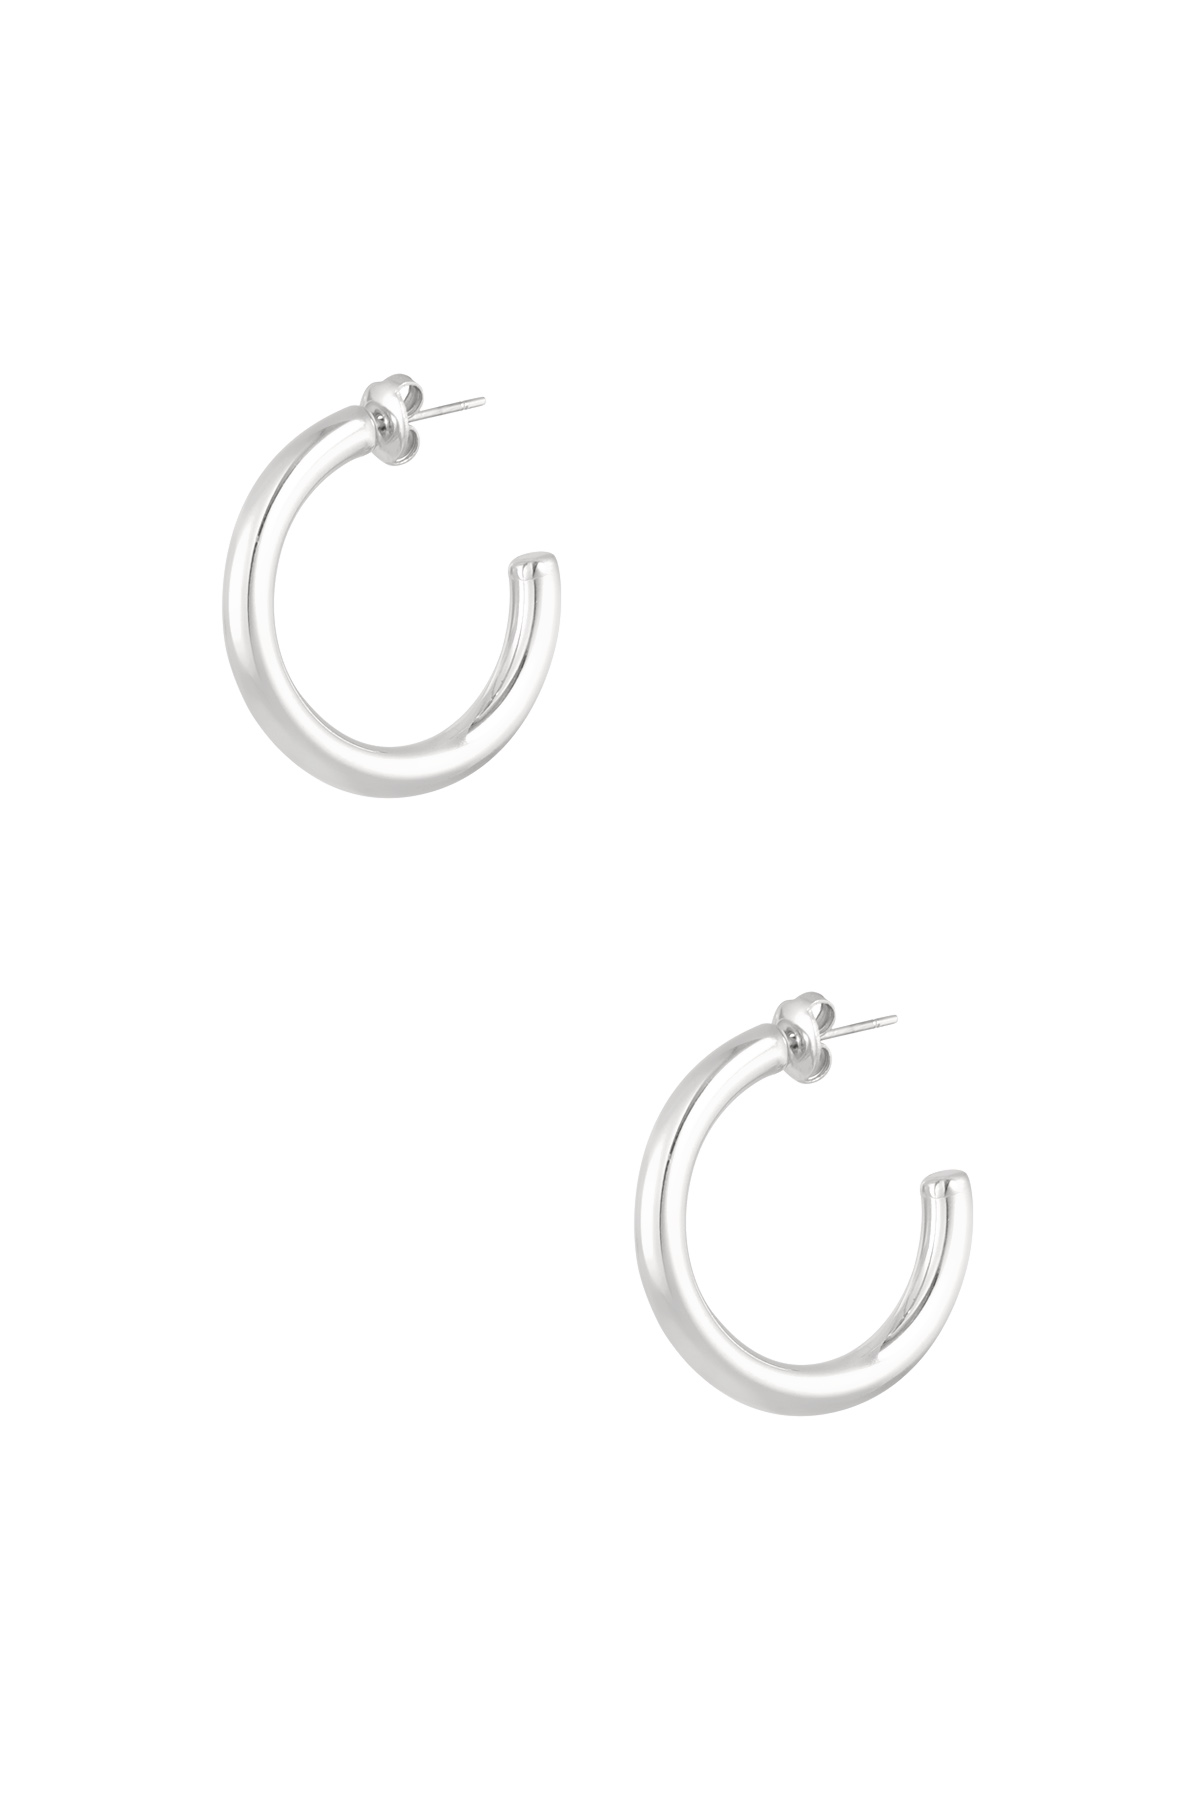 Ohrringe dick Basic klein - Silber 